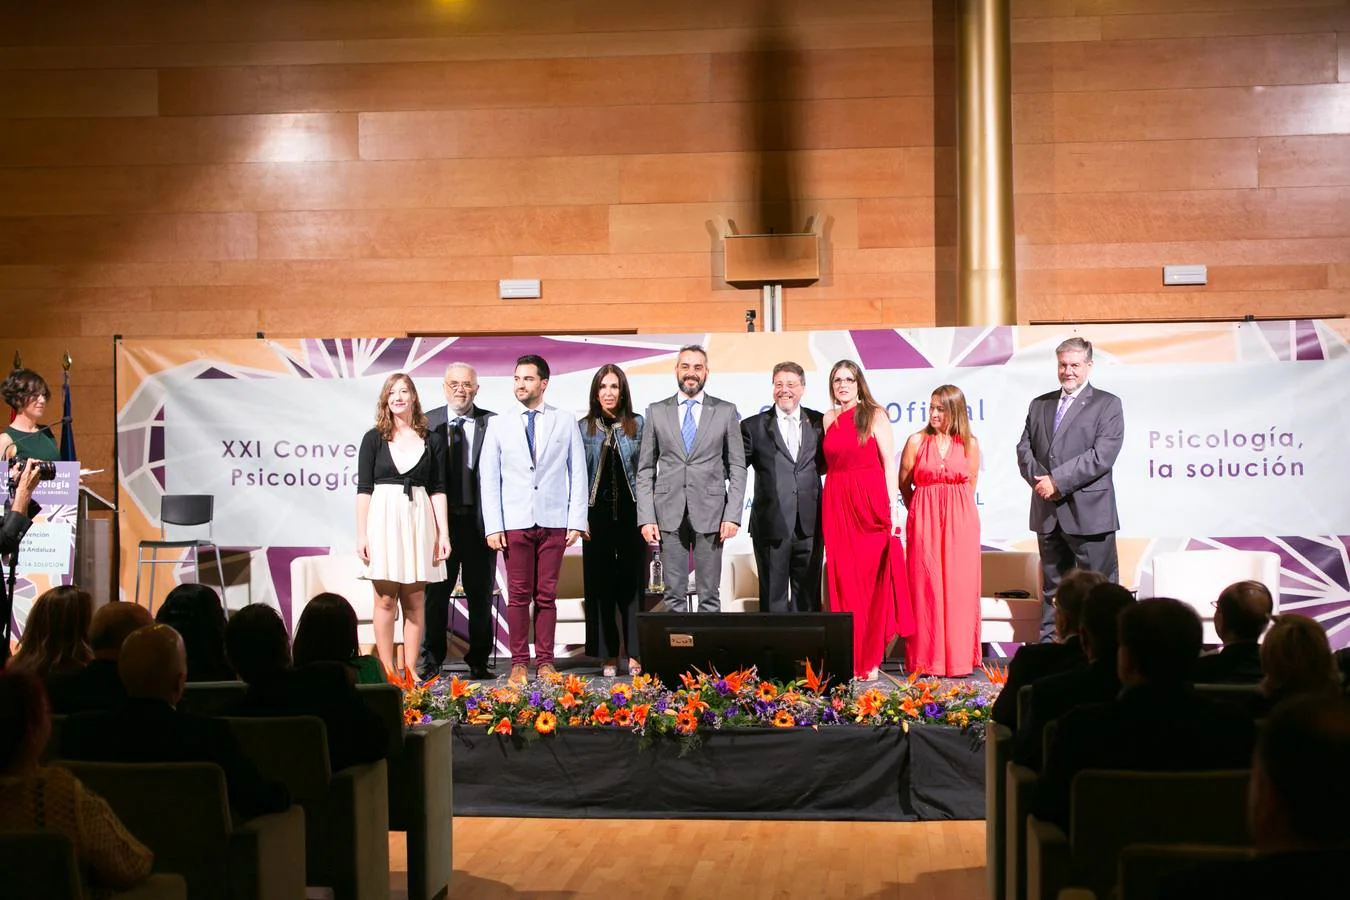 El Colegio Oficial de Médicos, la Unión Profesional de Granada y el catedrático de la Universidad de Almería Jesús de la Fuente Arias fueron algunos de los premiados durante la Convención